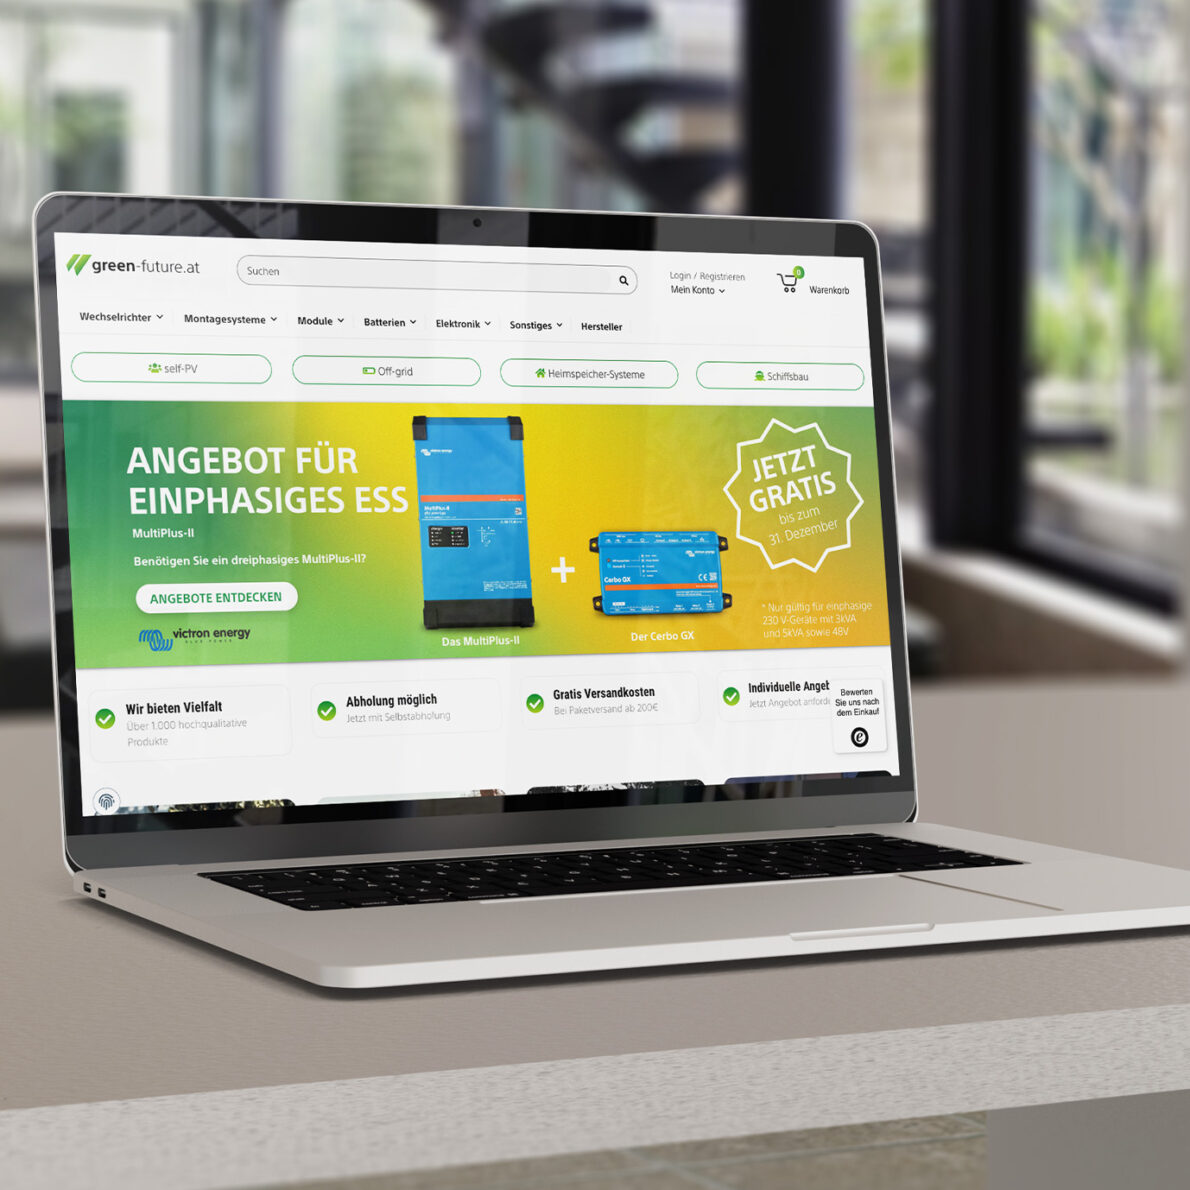 Macbook Auf Tisch Mit Green futureat Website Geöffnet